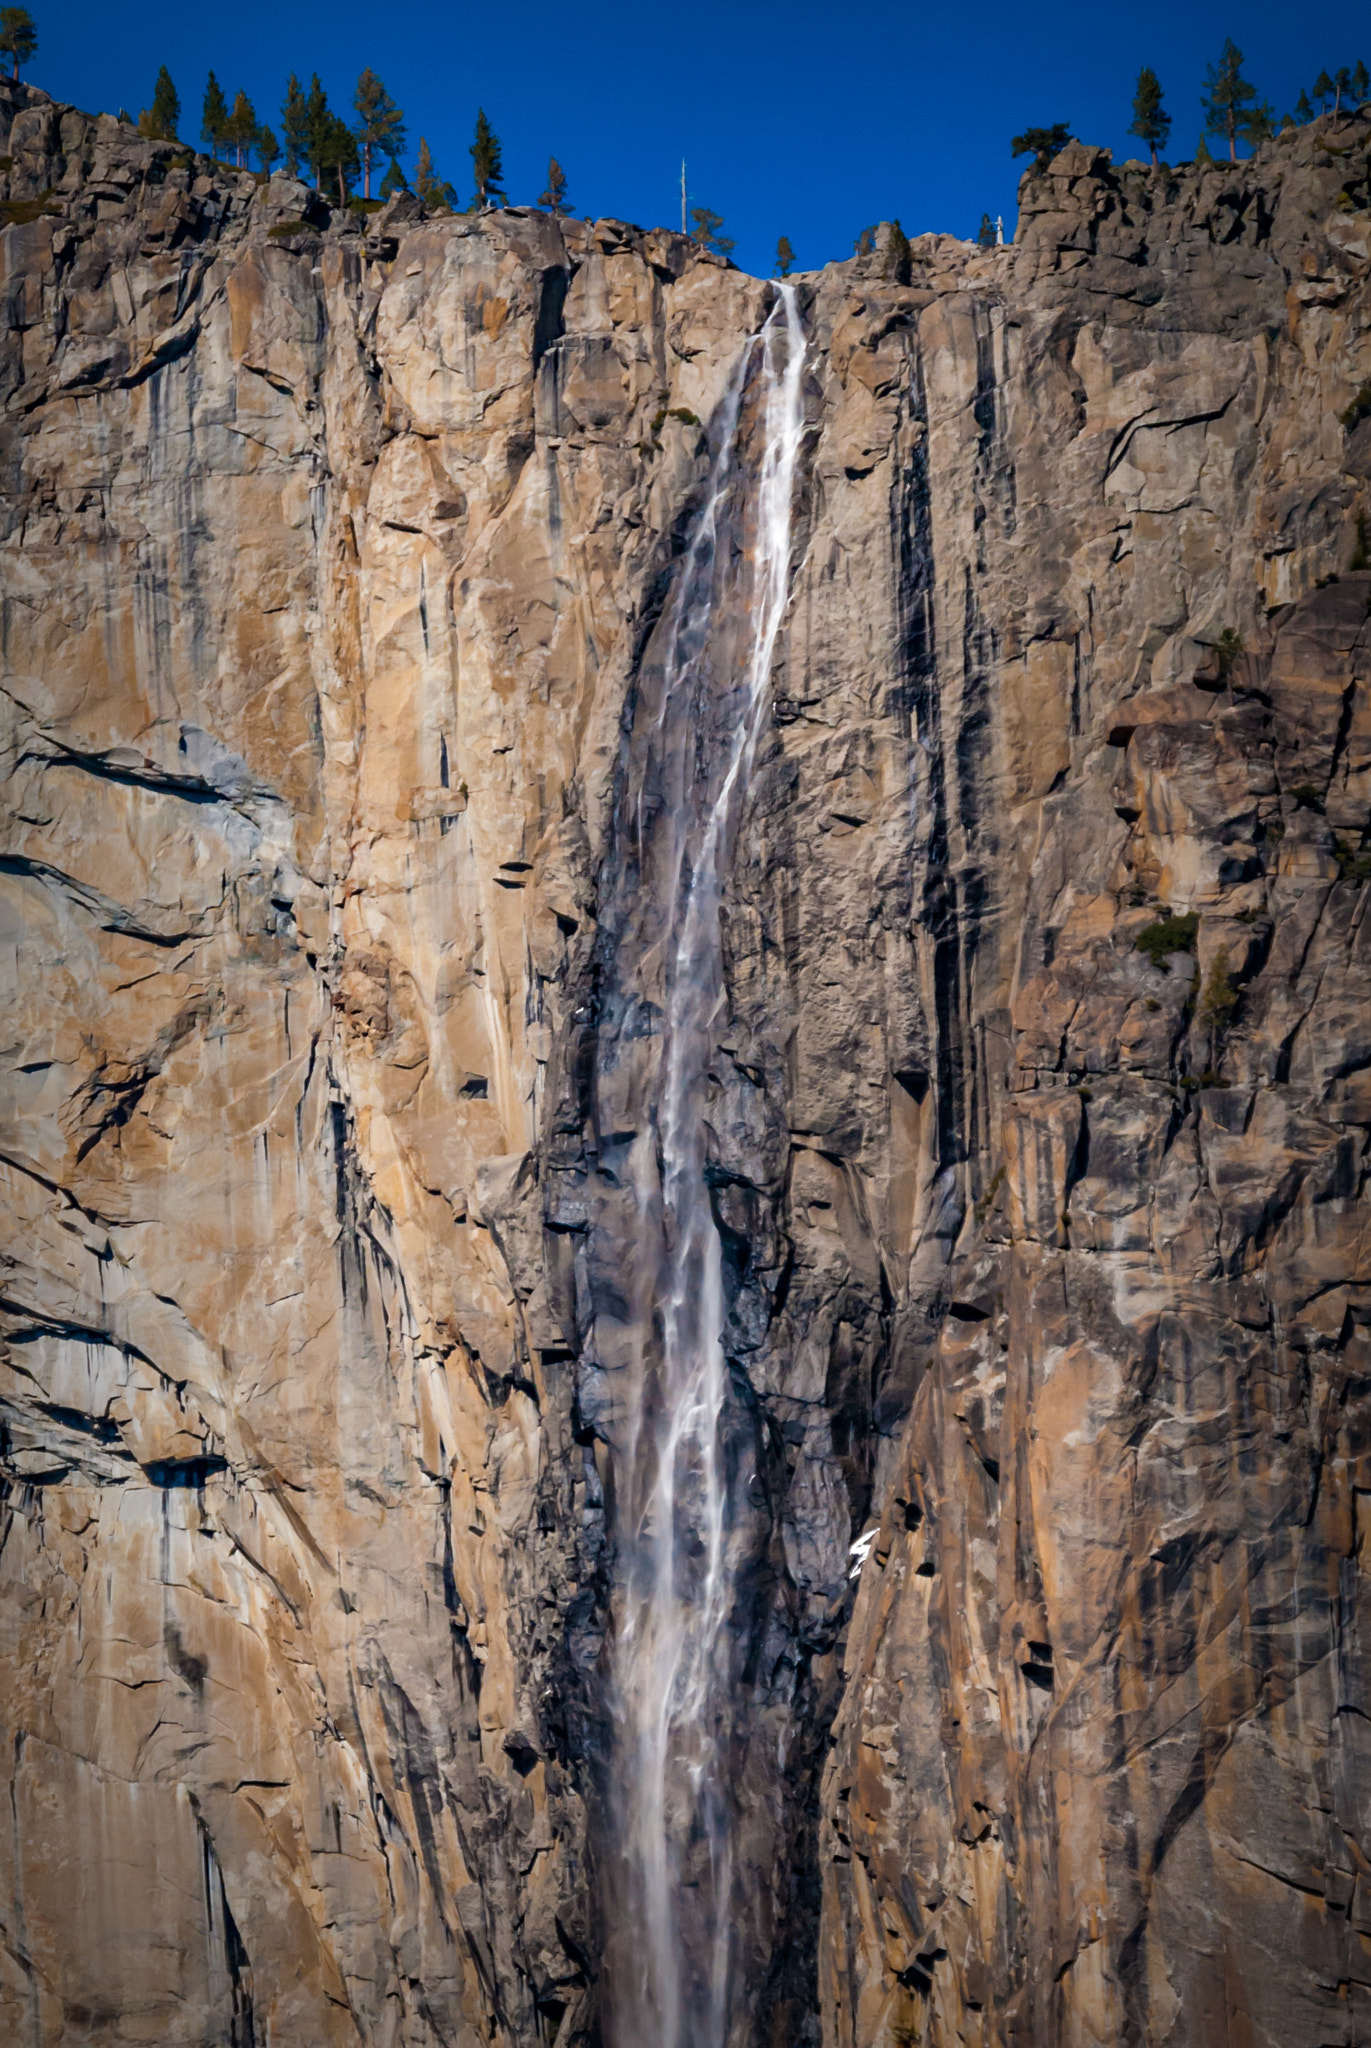 Nikon D200 + Nikon AF-S DX Nikkor 55-200mm F4-5.6G ED sample photo. Yosemite some falls by ronin dusette photography